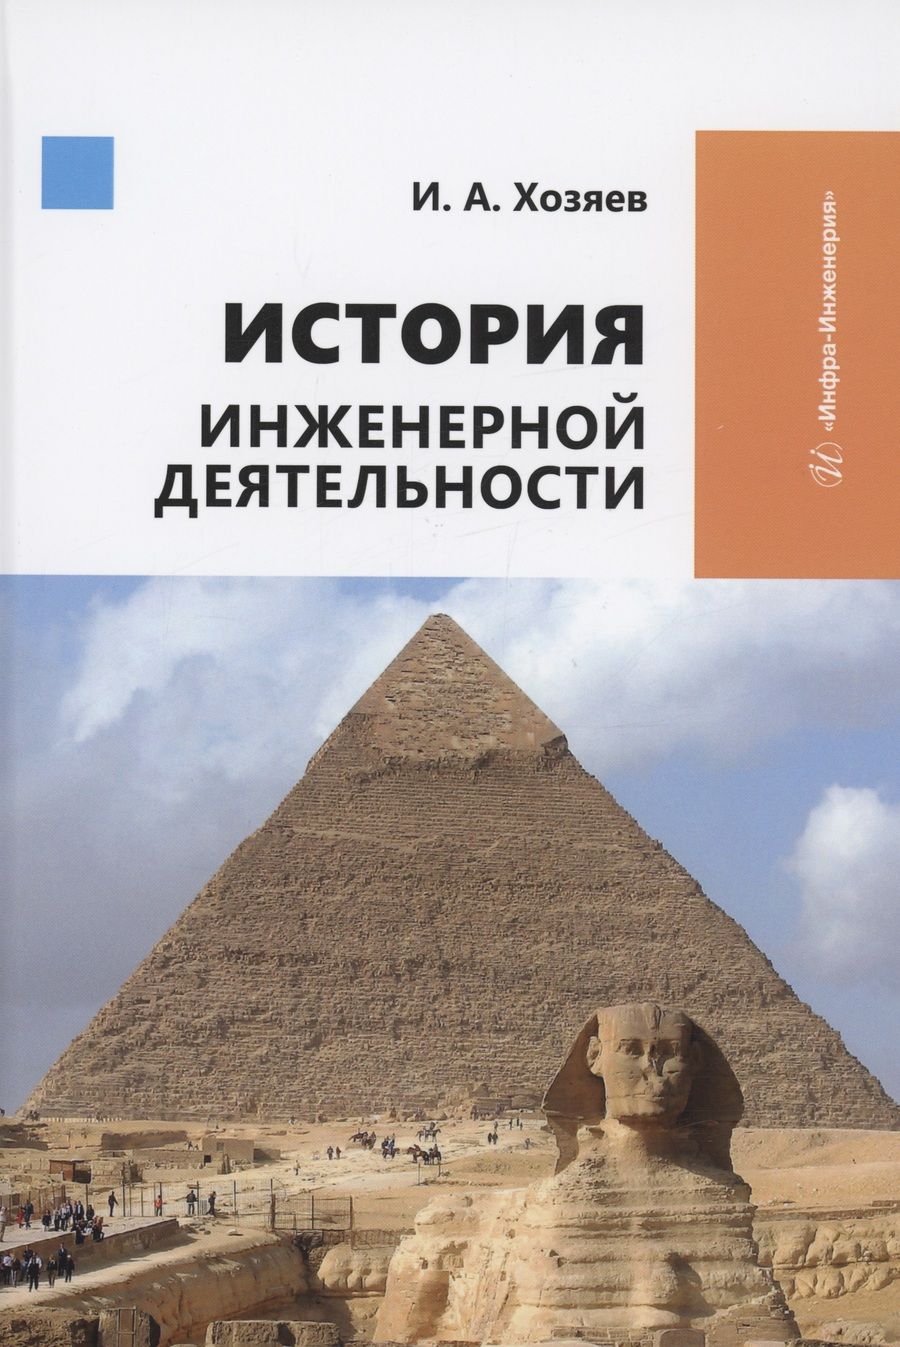 Обложка книги "Хозяев: История инженерной деятельности. Учебное пособие"